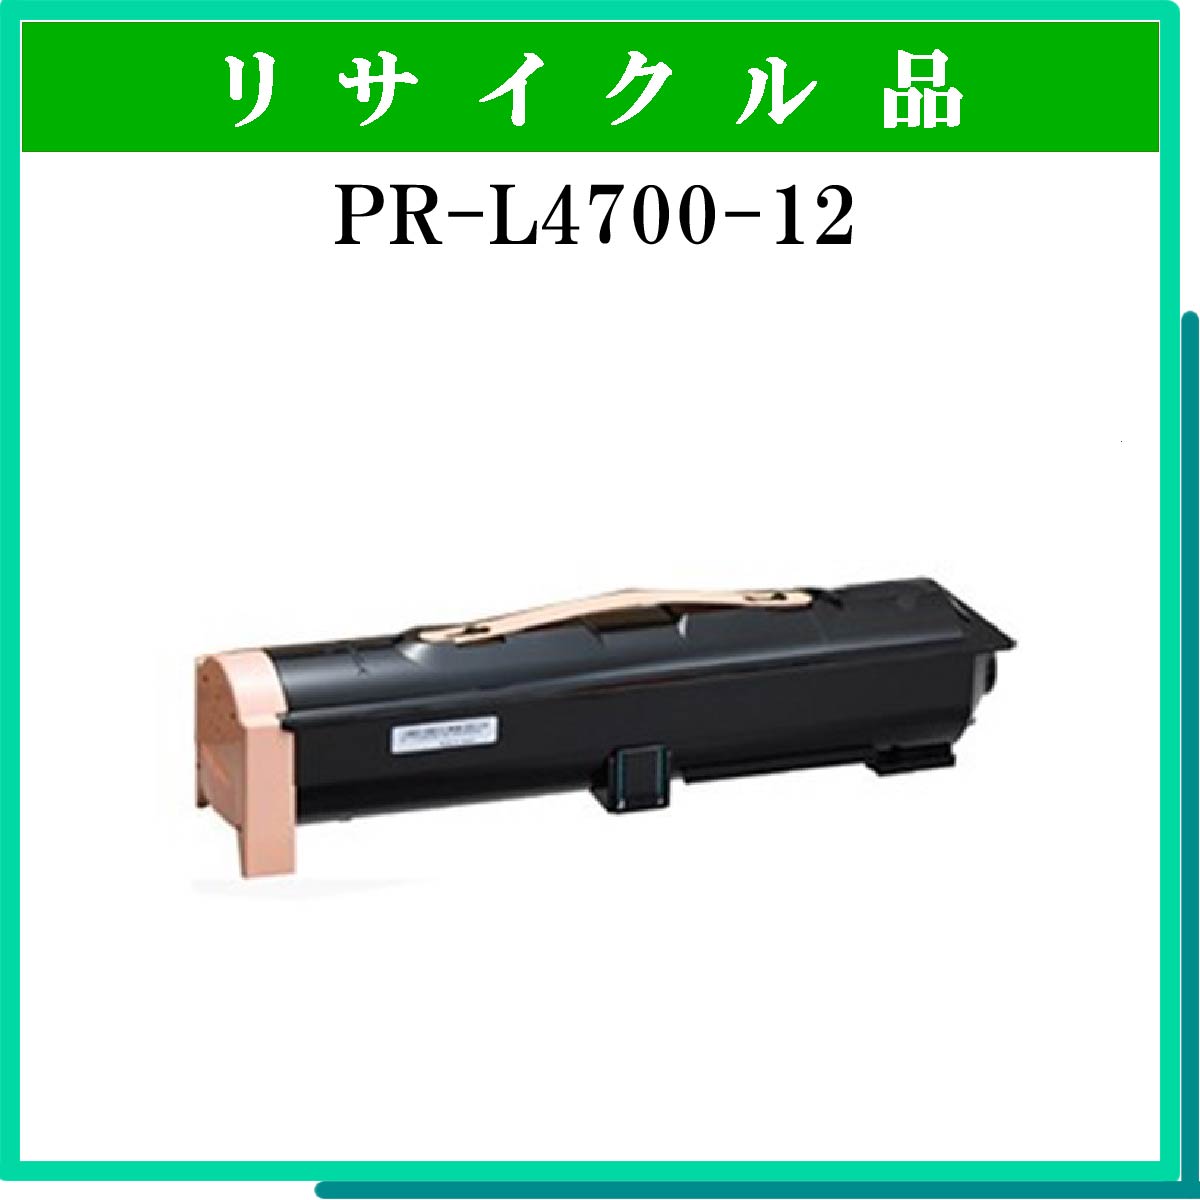 PR-L4700-12